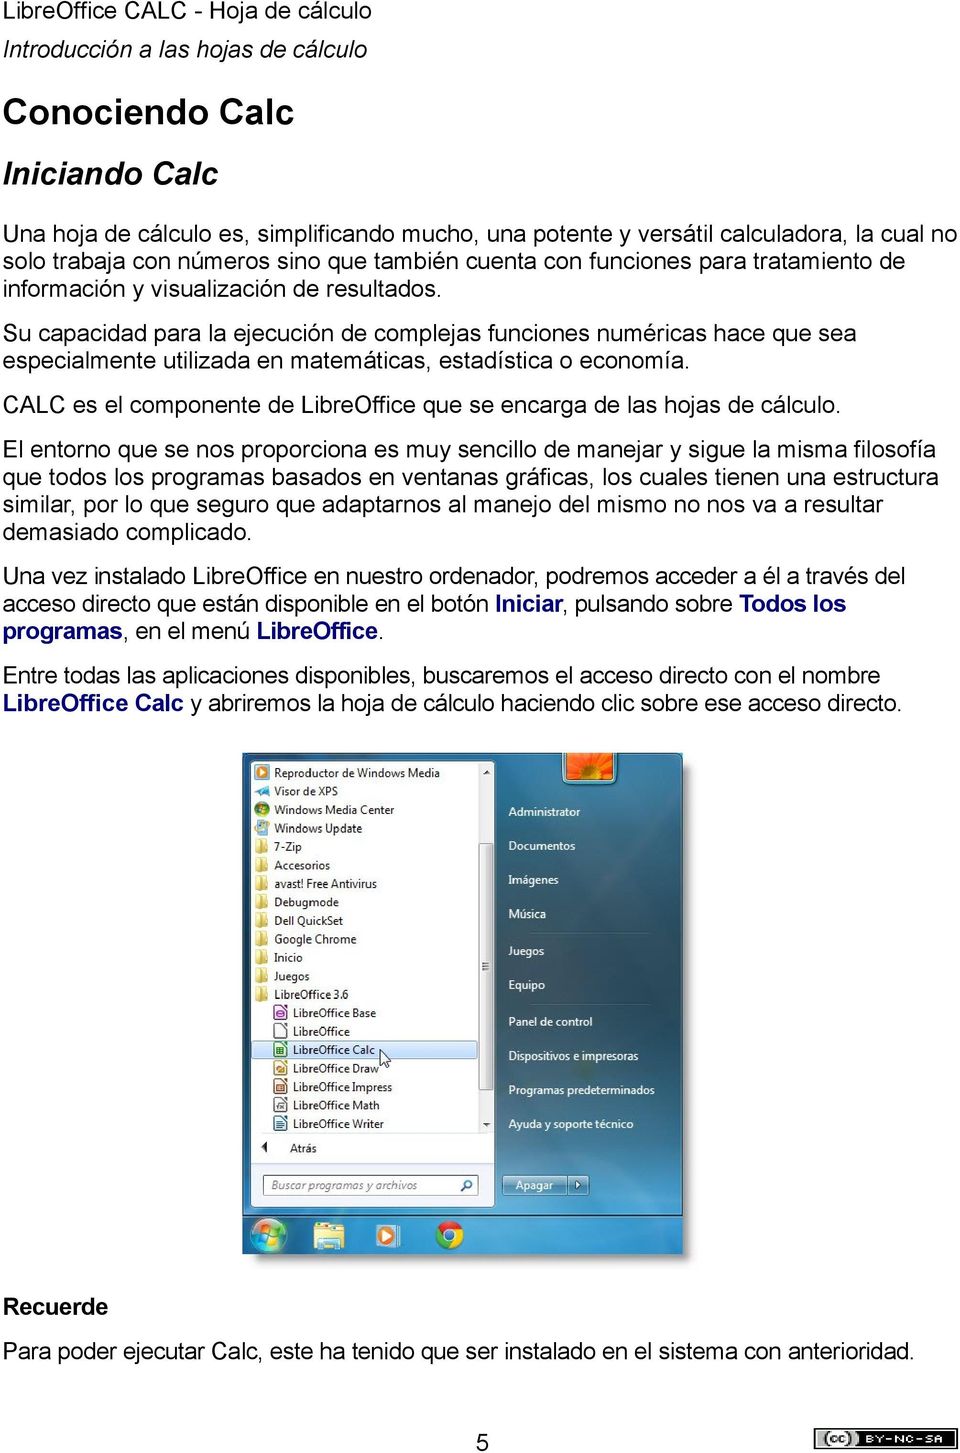 CALC es el componente de LibreOffice que se encarga de las hojas de cálculo.